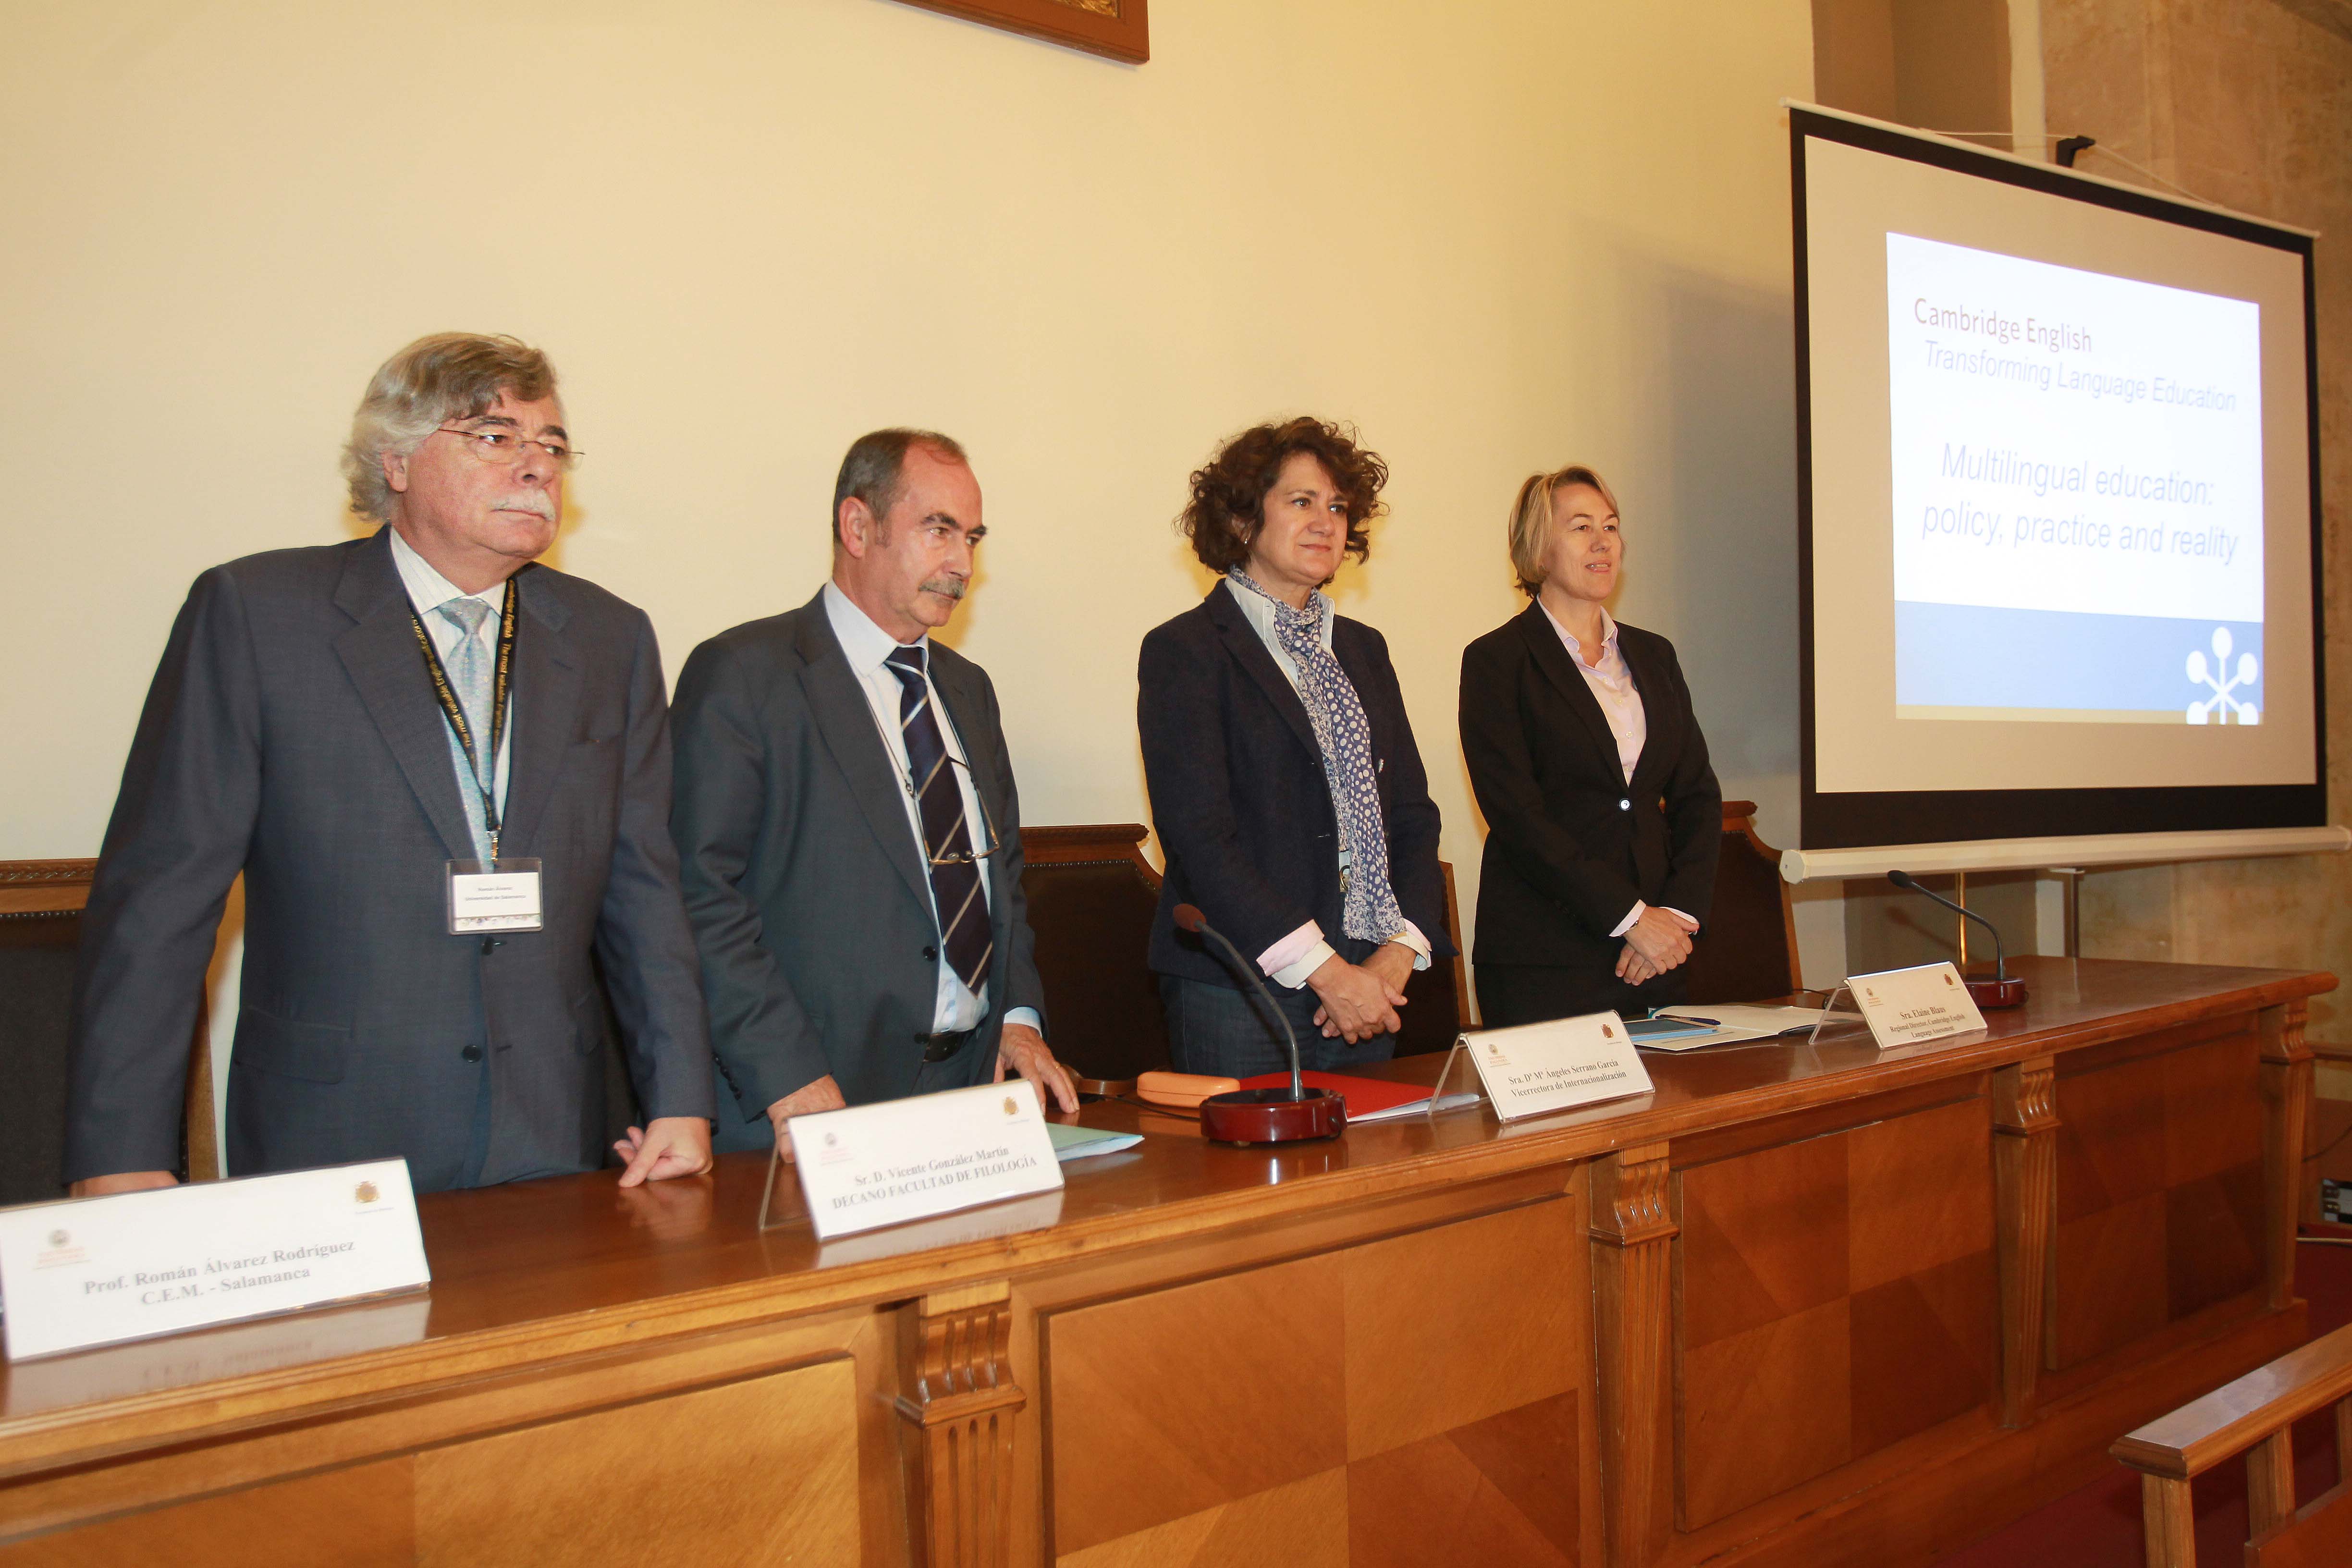 Los ministerios de Educación de Italia y Portugal exponen sus proyectos educativos en materia de bilingüismo en la Universidad de Salamanca